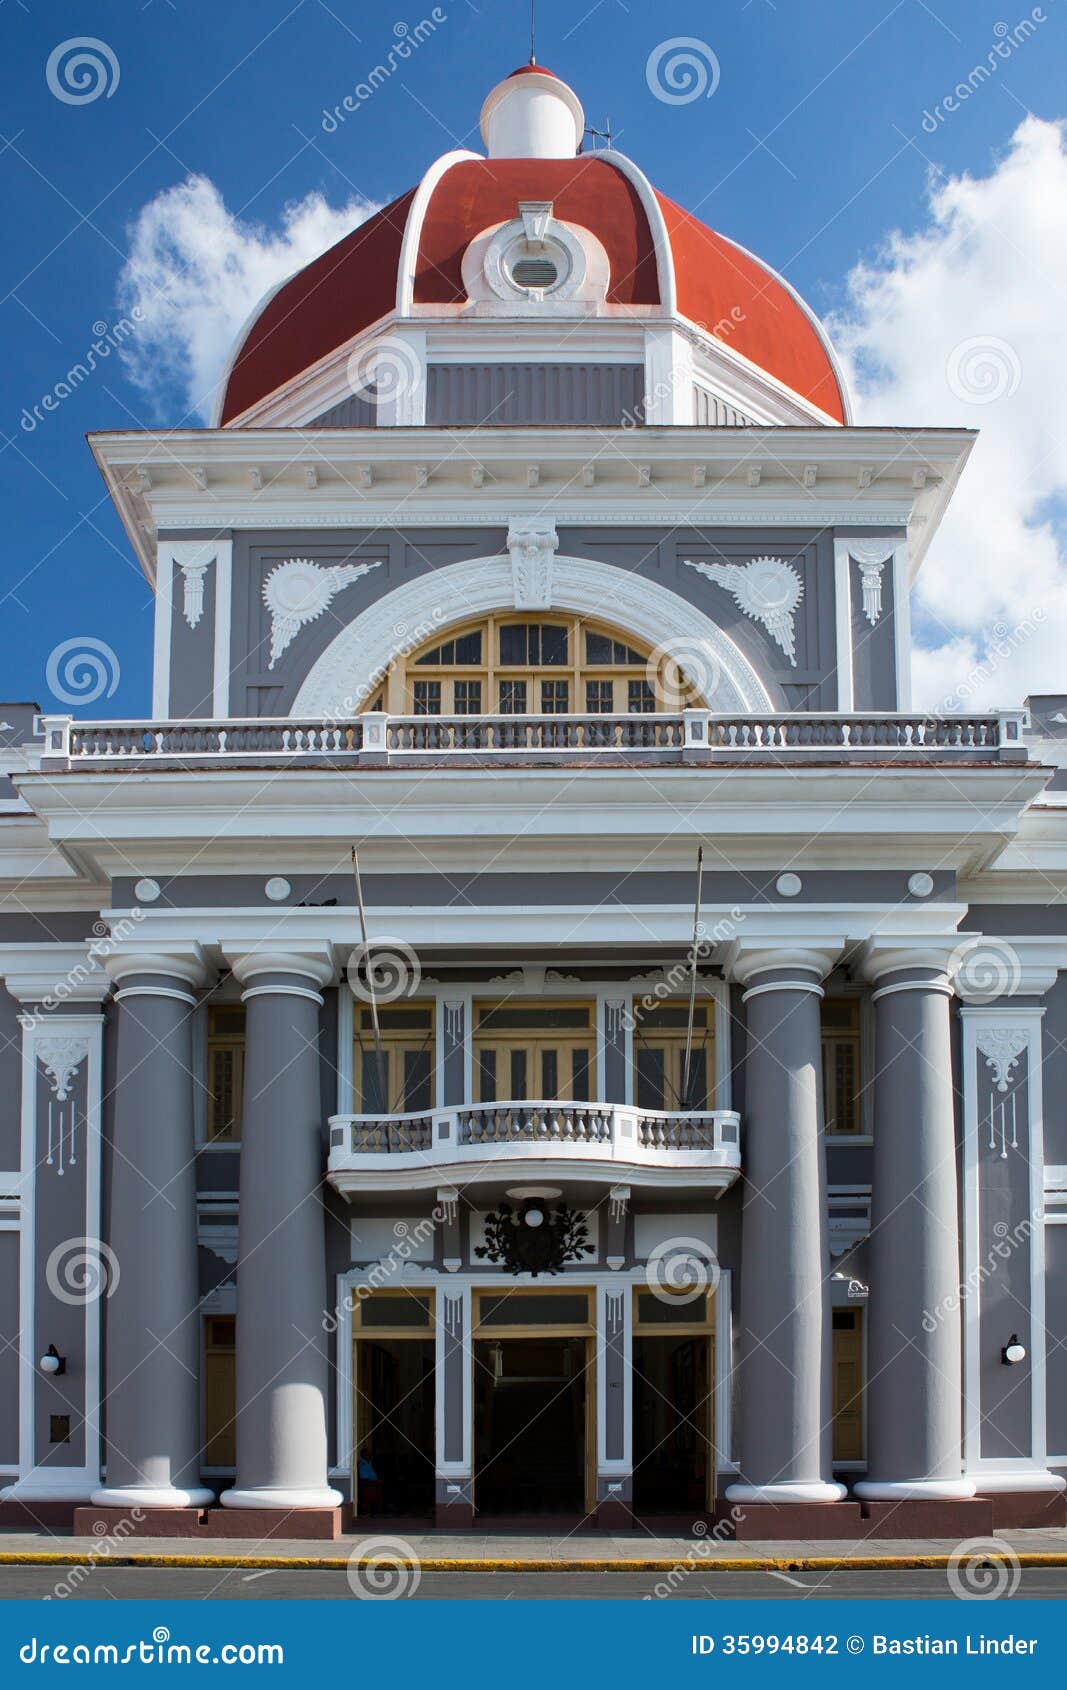 palacio de gobierno in cienfuegos, cuba